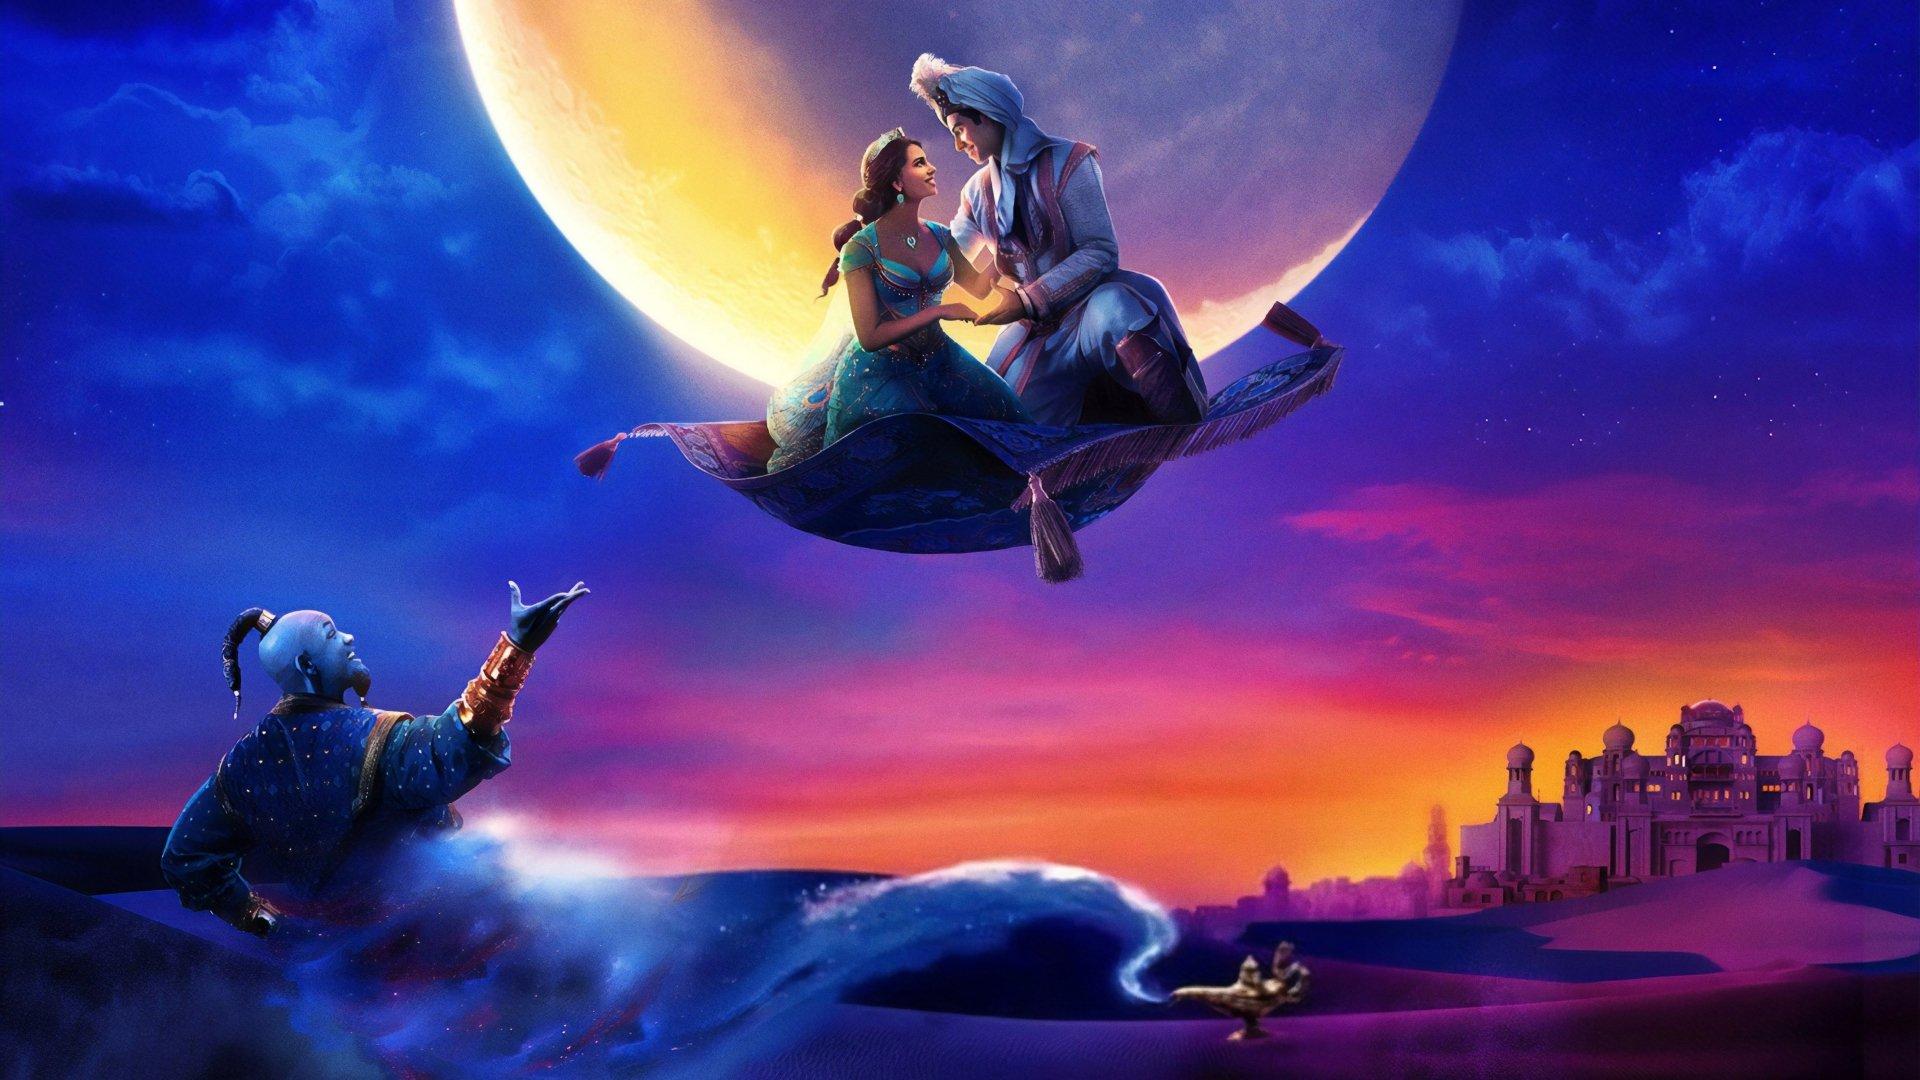 Aladdin (2019) HD Wallpaper